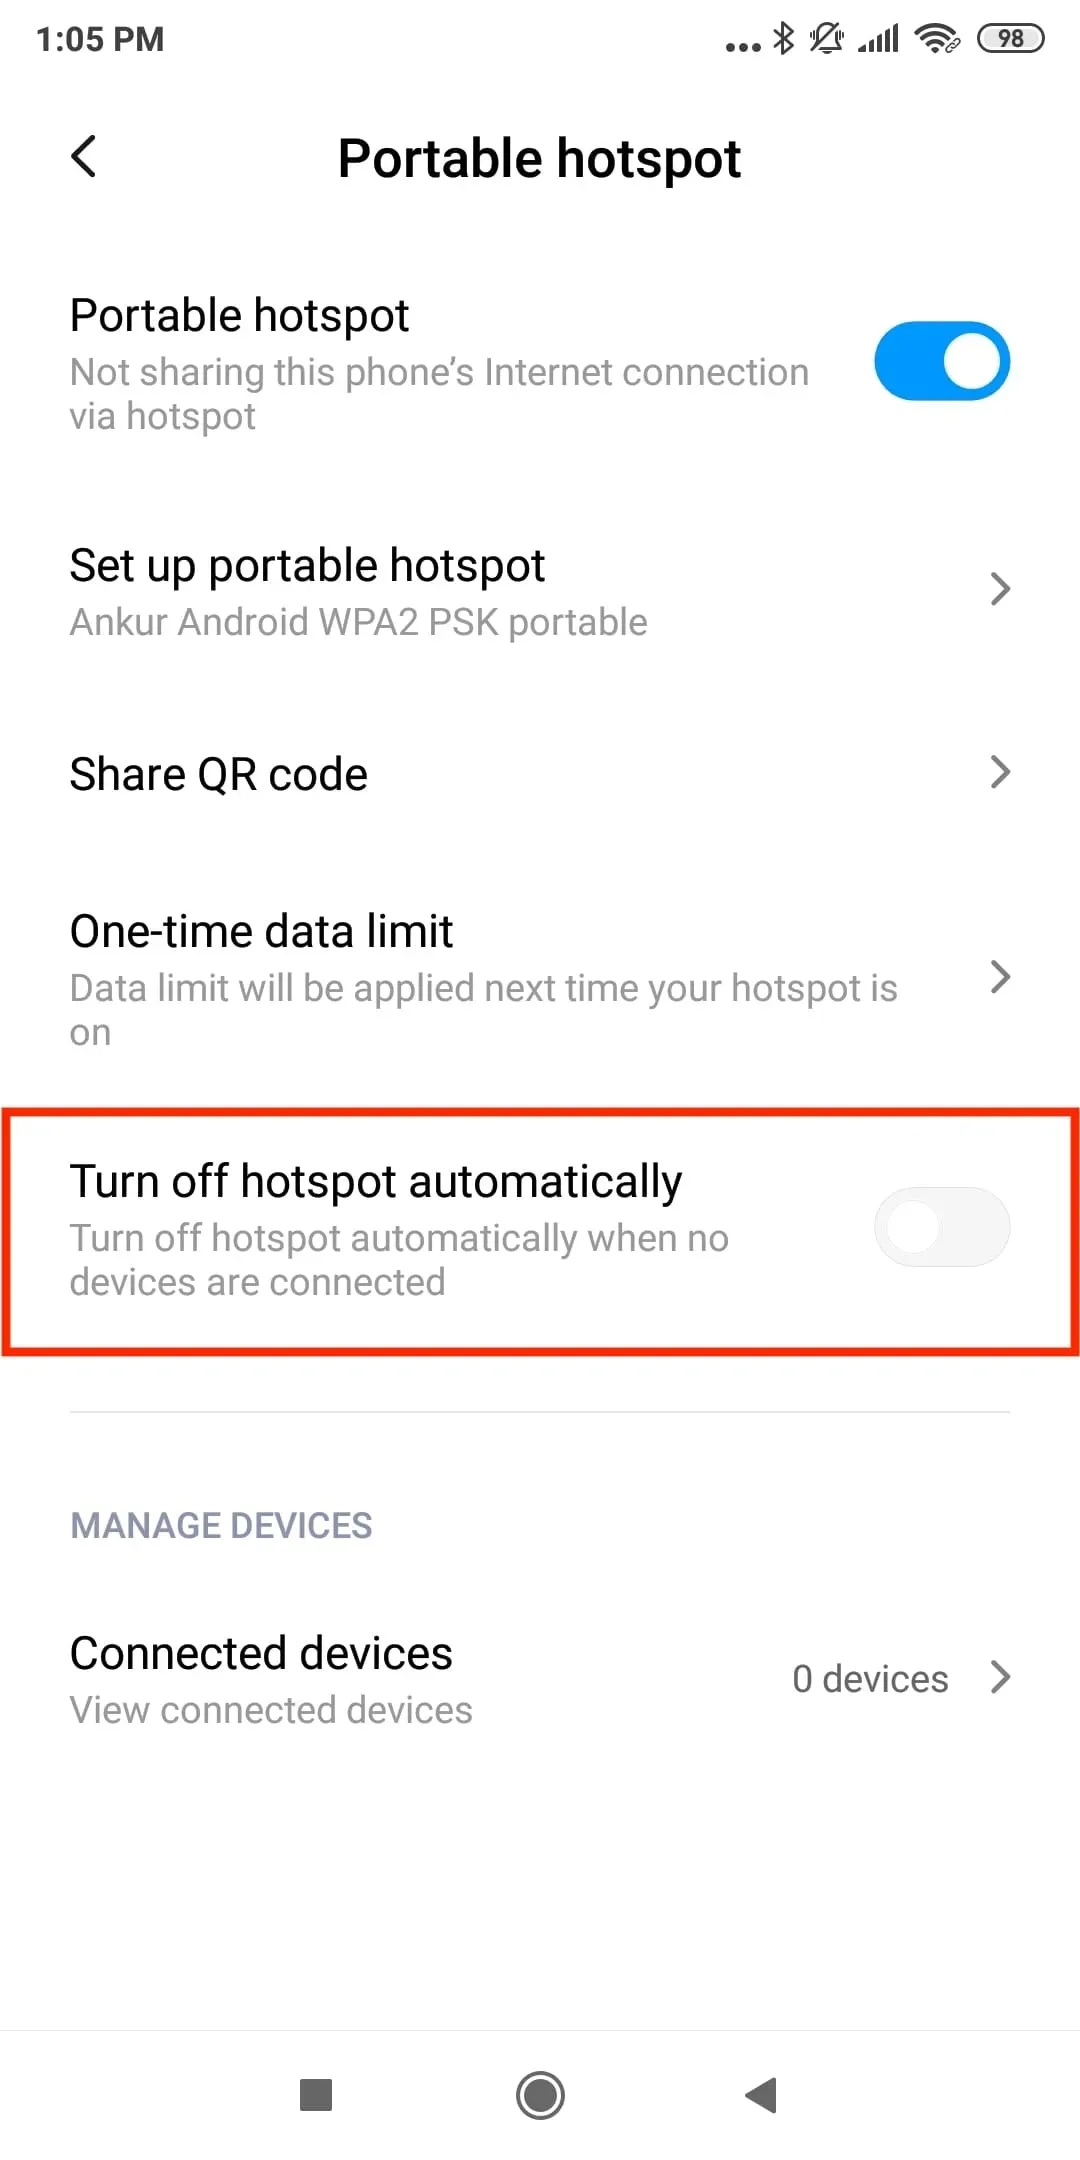 Verhindern Sie, dass Ihr Android-Telefon den Hotspot automatisch ausschaltet